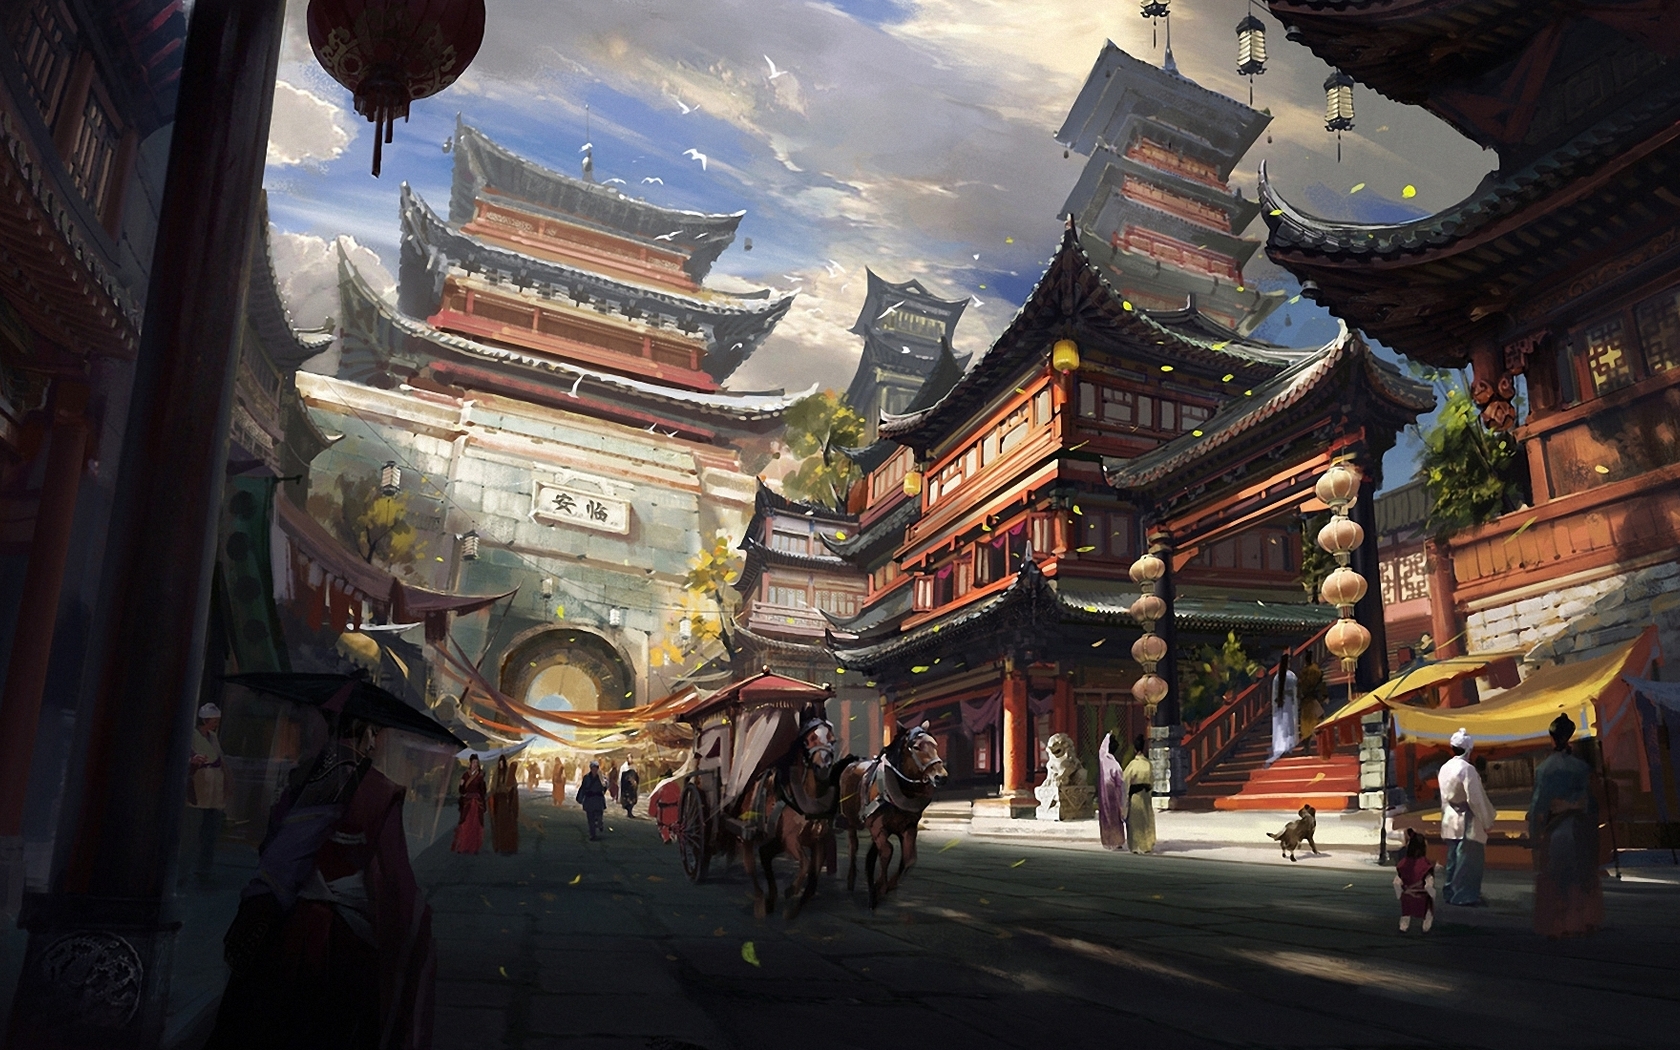 Концепт арт Китай храм